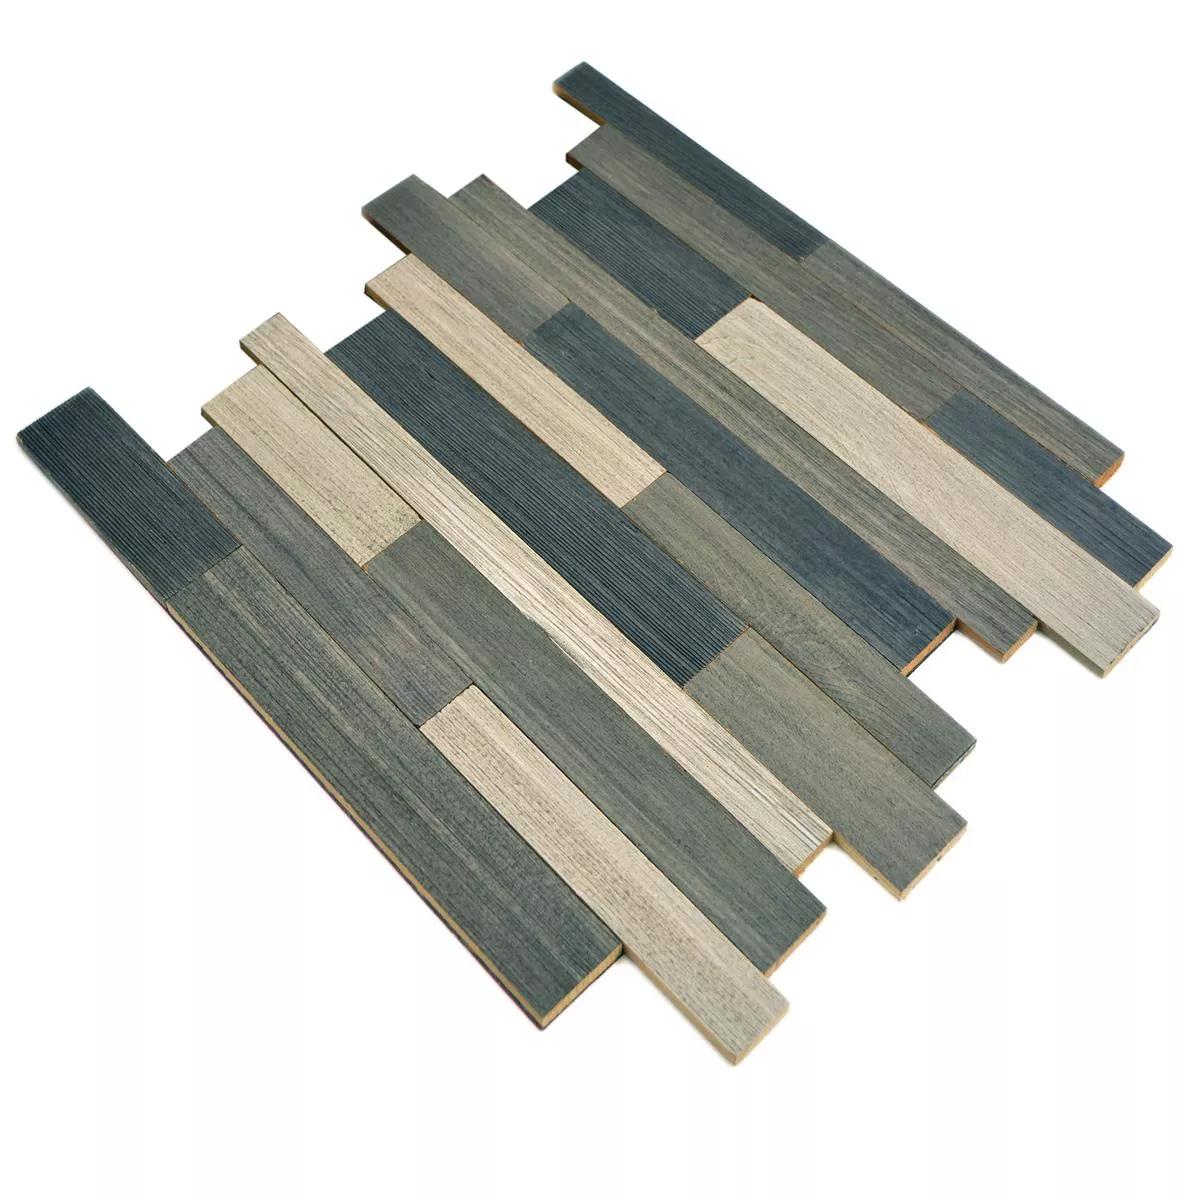 Sample Mosaic Tiles Wood Paris Pattern Self Adhesive Grey Mix